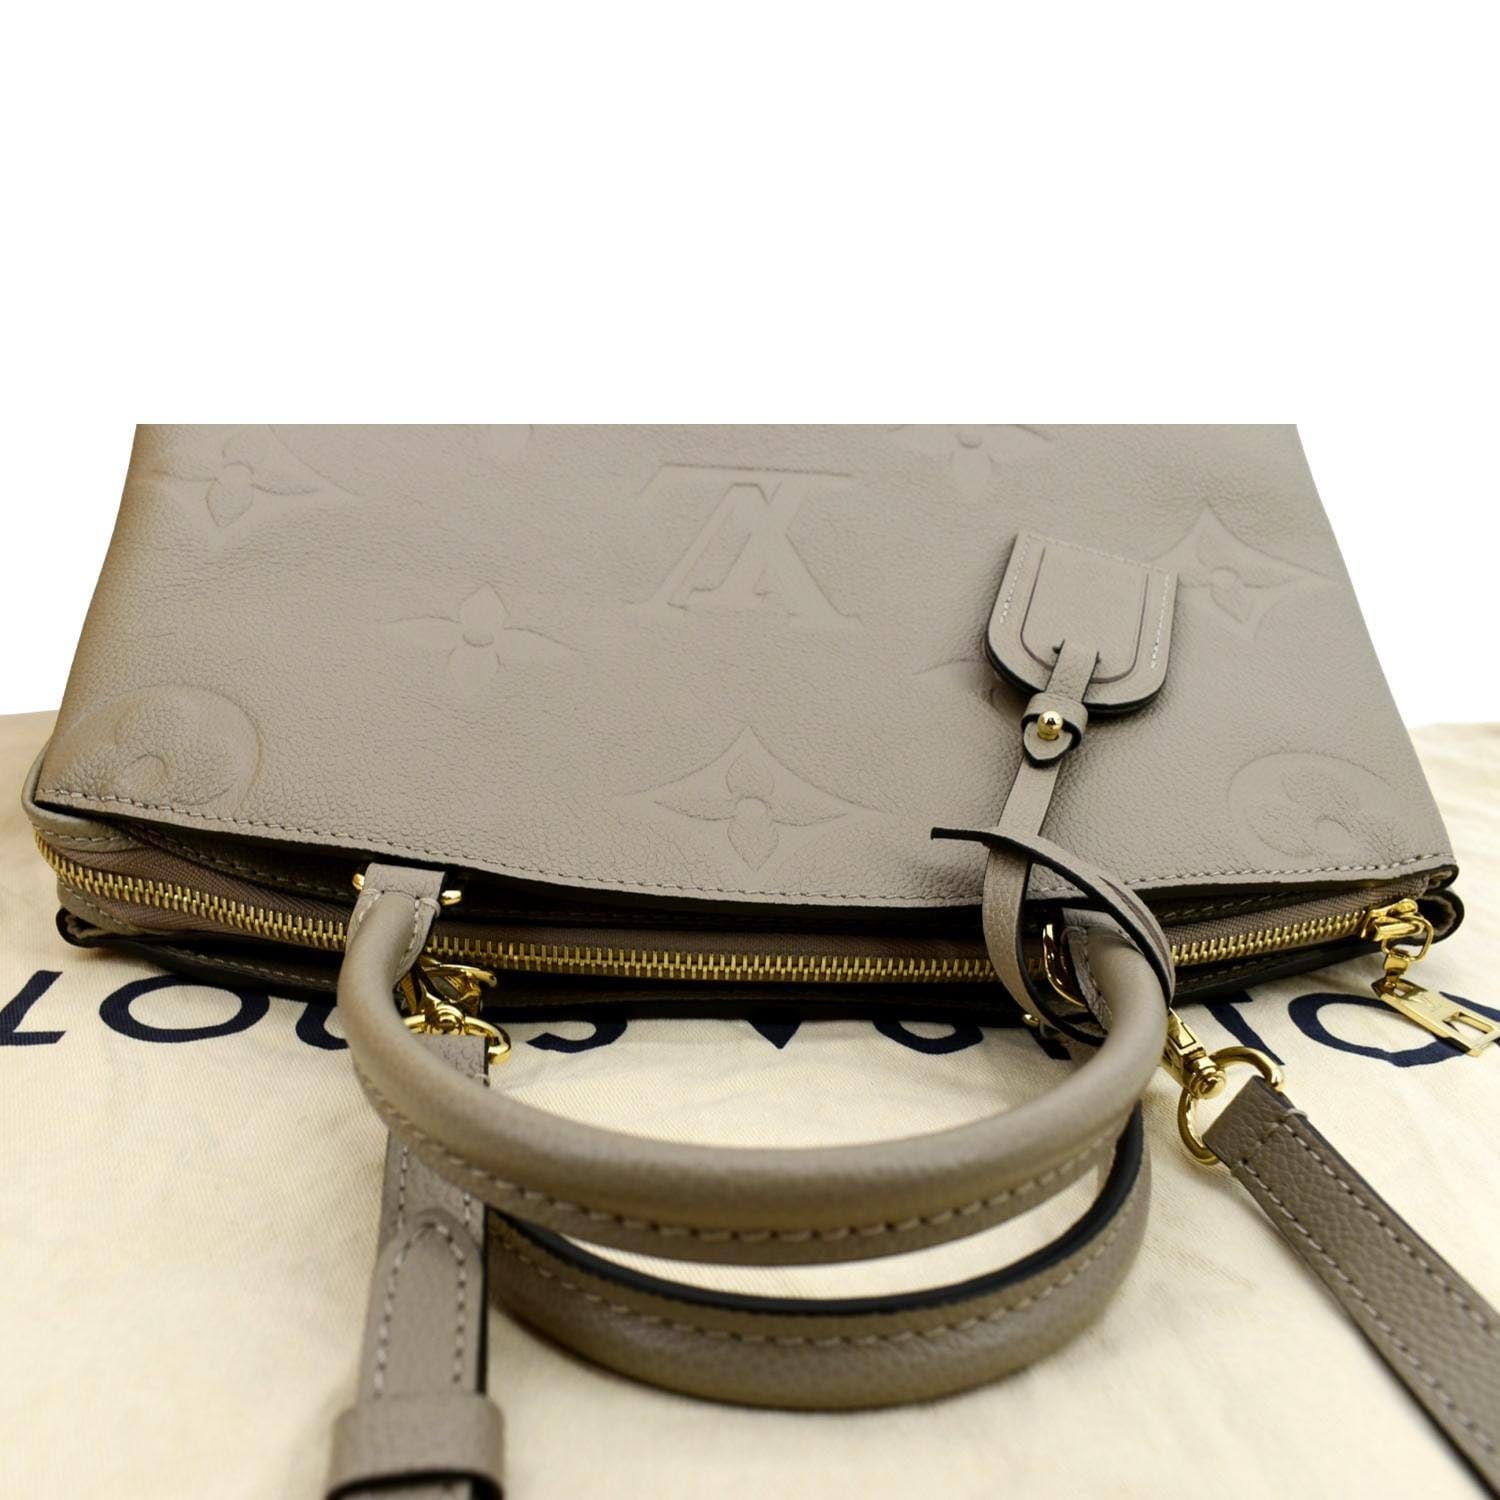 strap monogram empreinte leather wallets